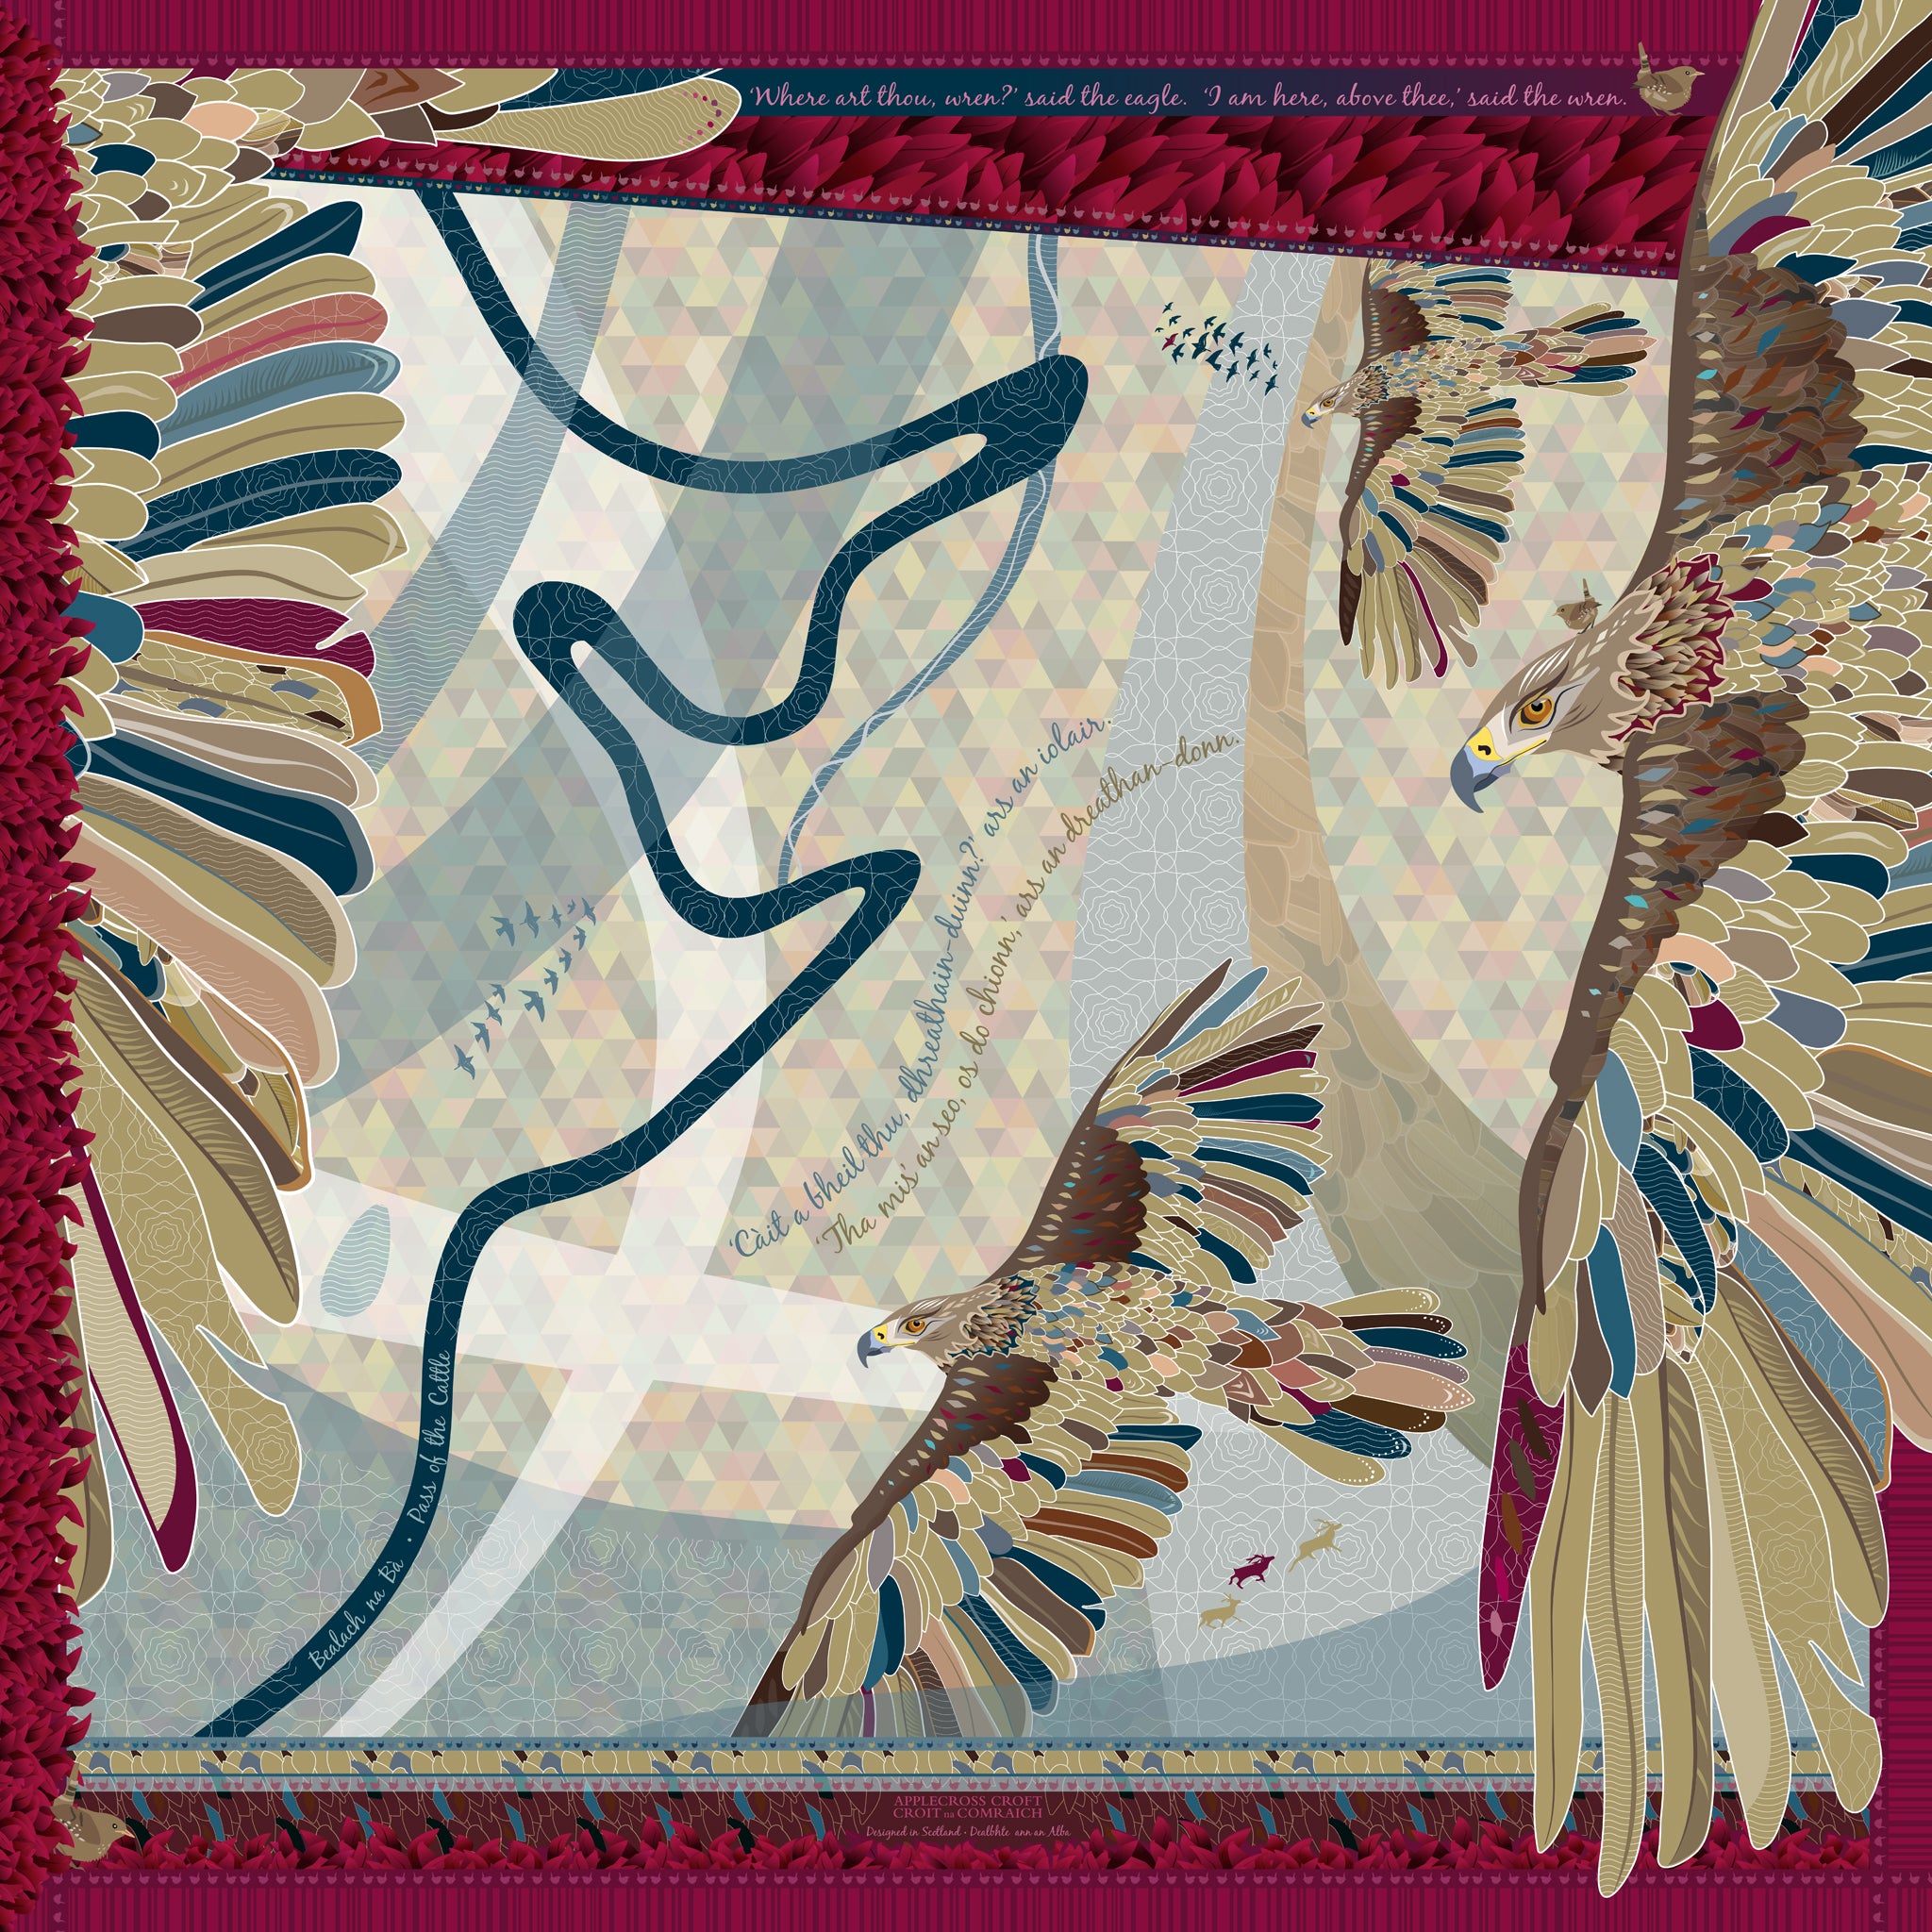 Eagle & Wren exclusive silk scarf design by Applecross Croft – luxury Scottish Highland gift